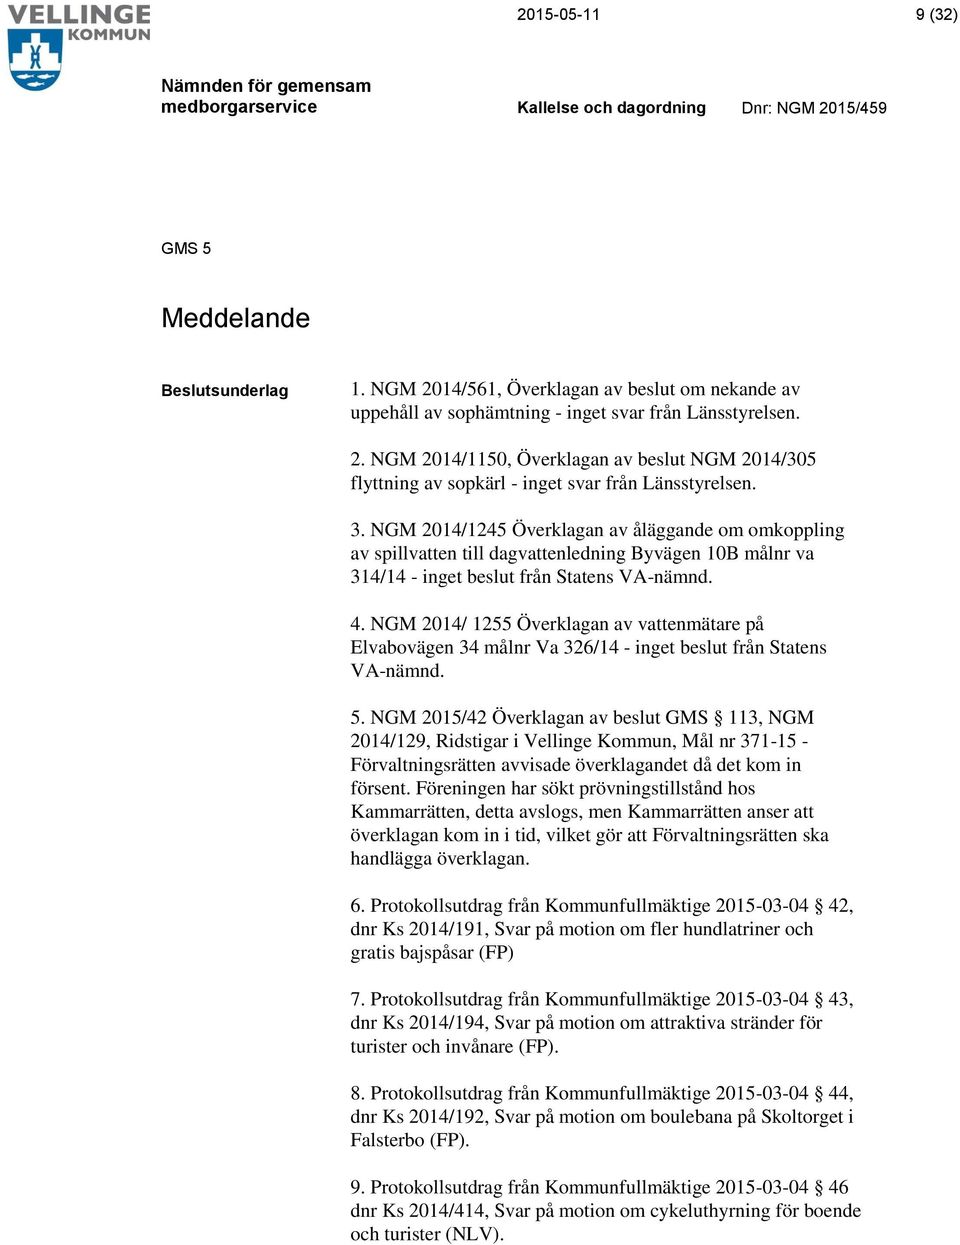 NGM 2014/ 1255 Överklagan av vattenmätare på Elvabovägen 34 målnr Va 326/14 - inget beslut från Statens VA-nämnd. 5.